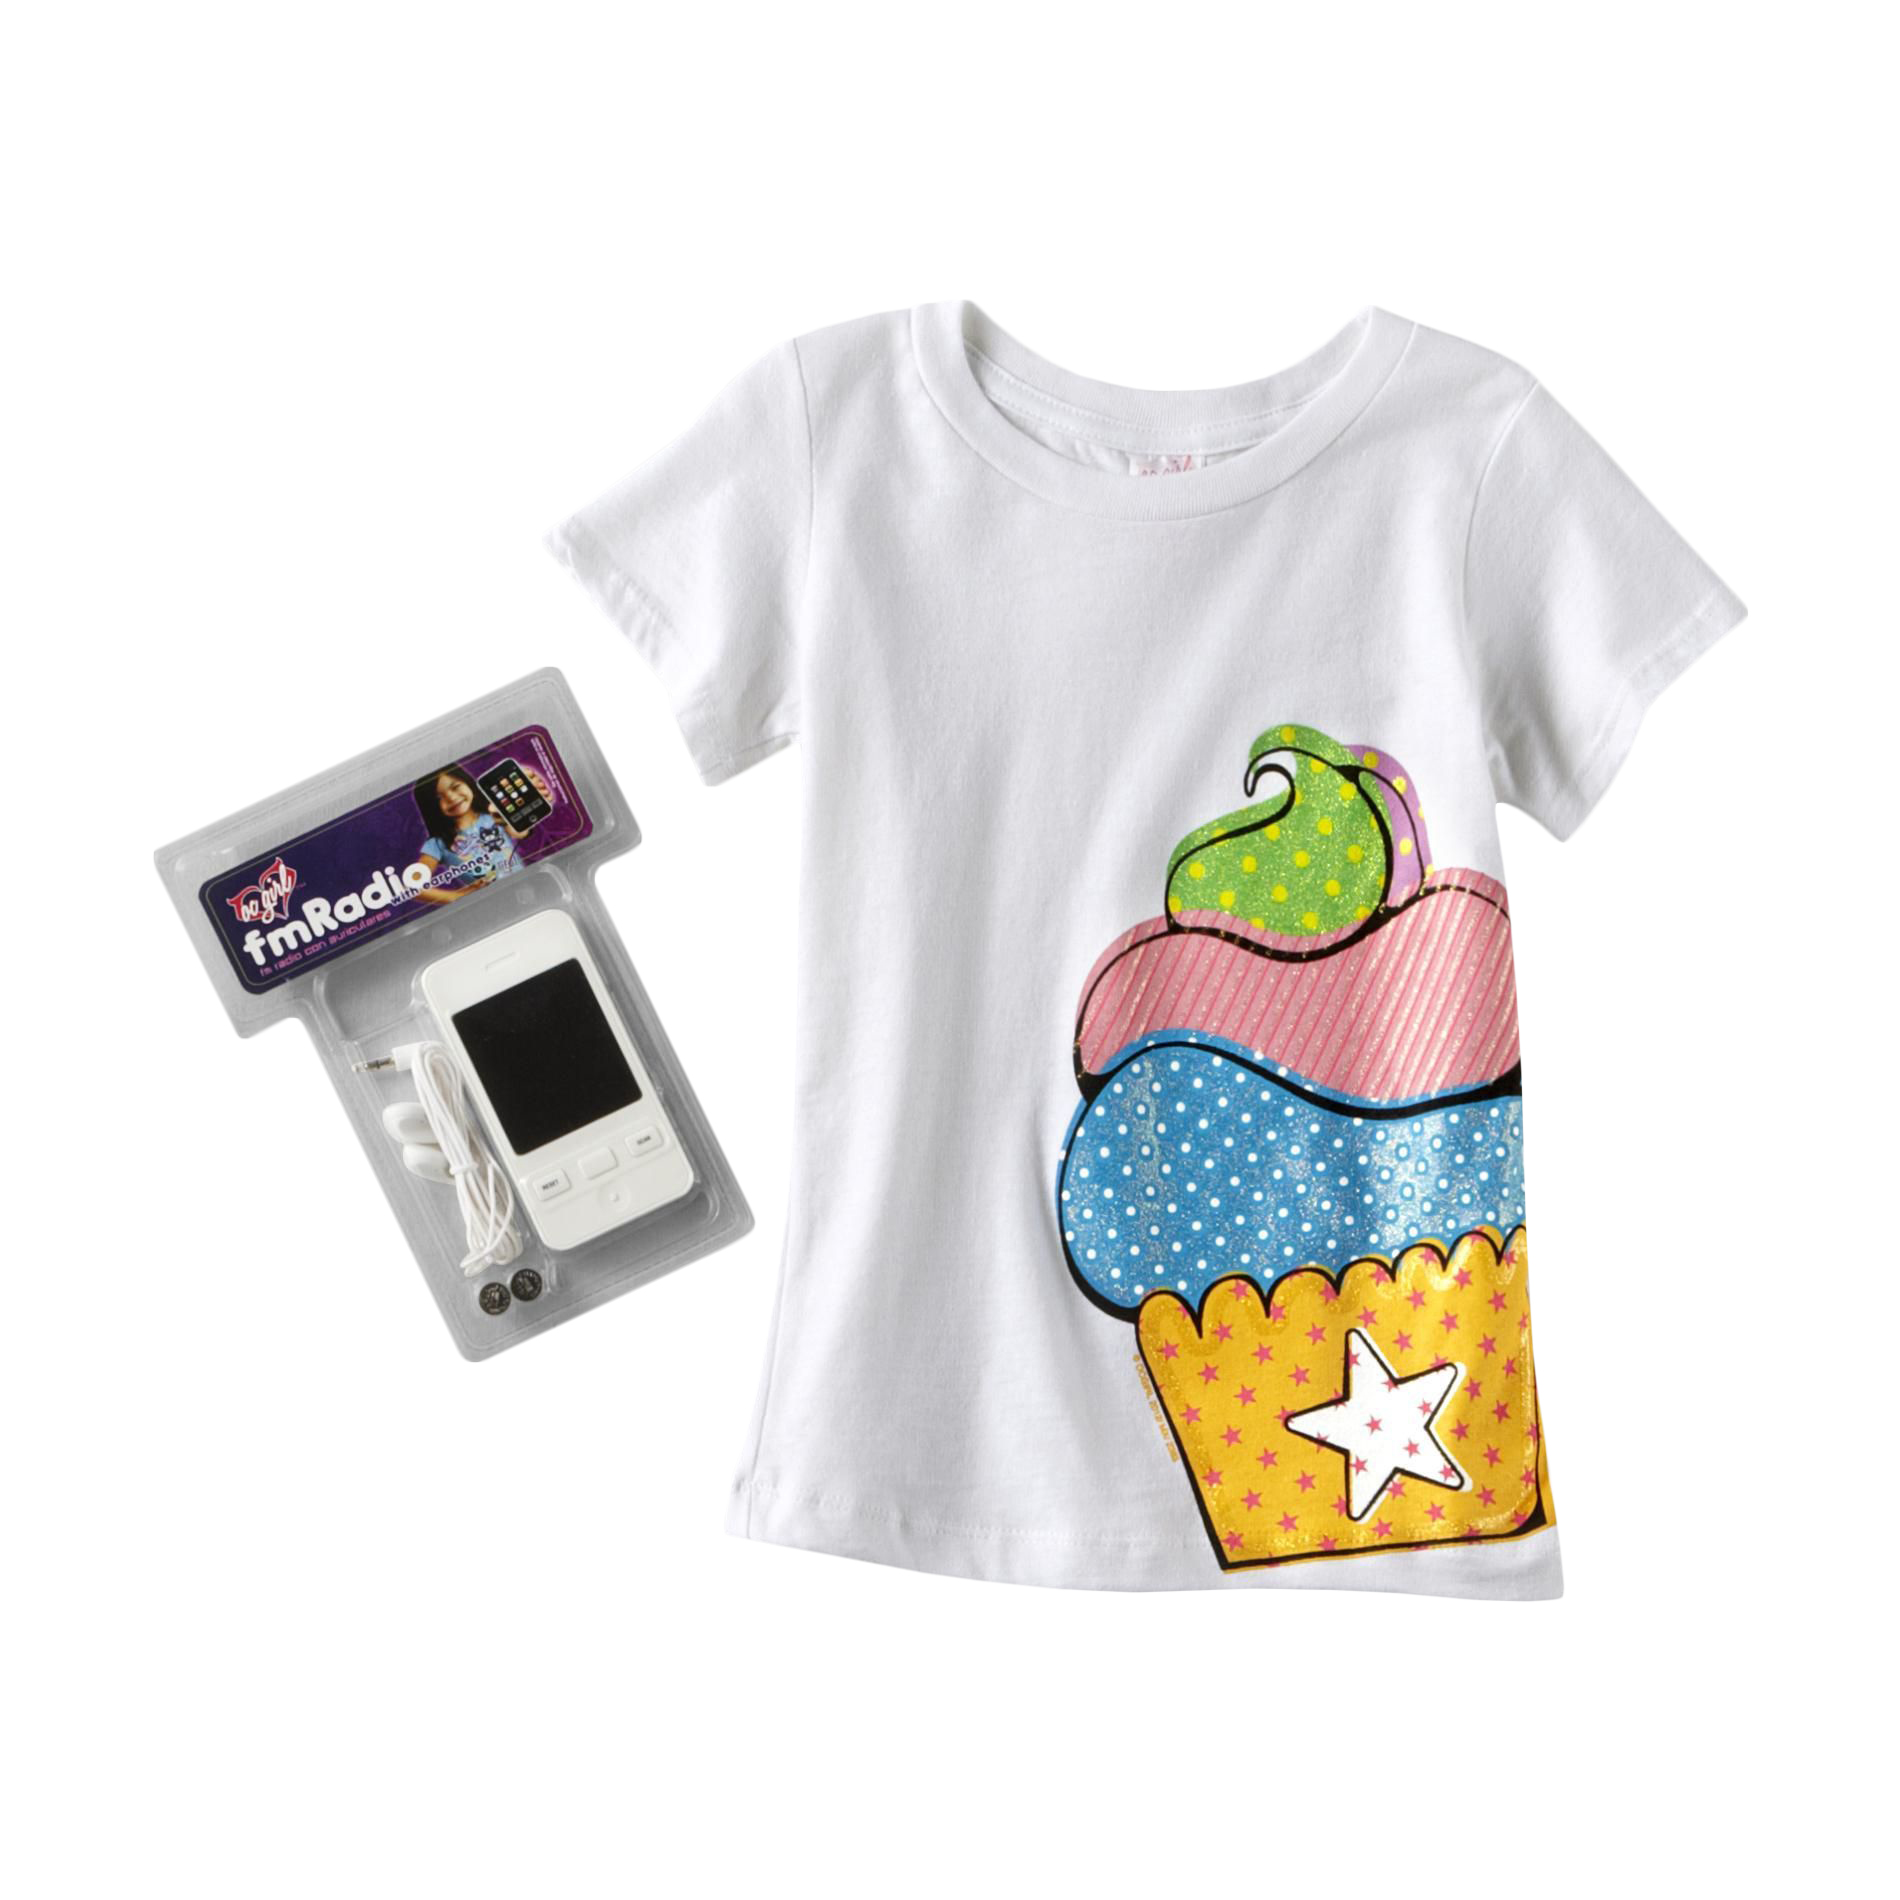 OC Girls Girl's Graphic T-Shirt & FM Radio - Cupcake